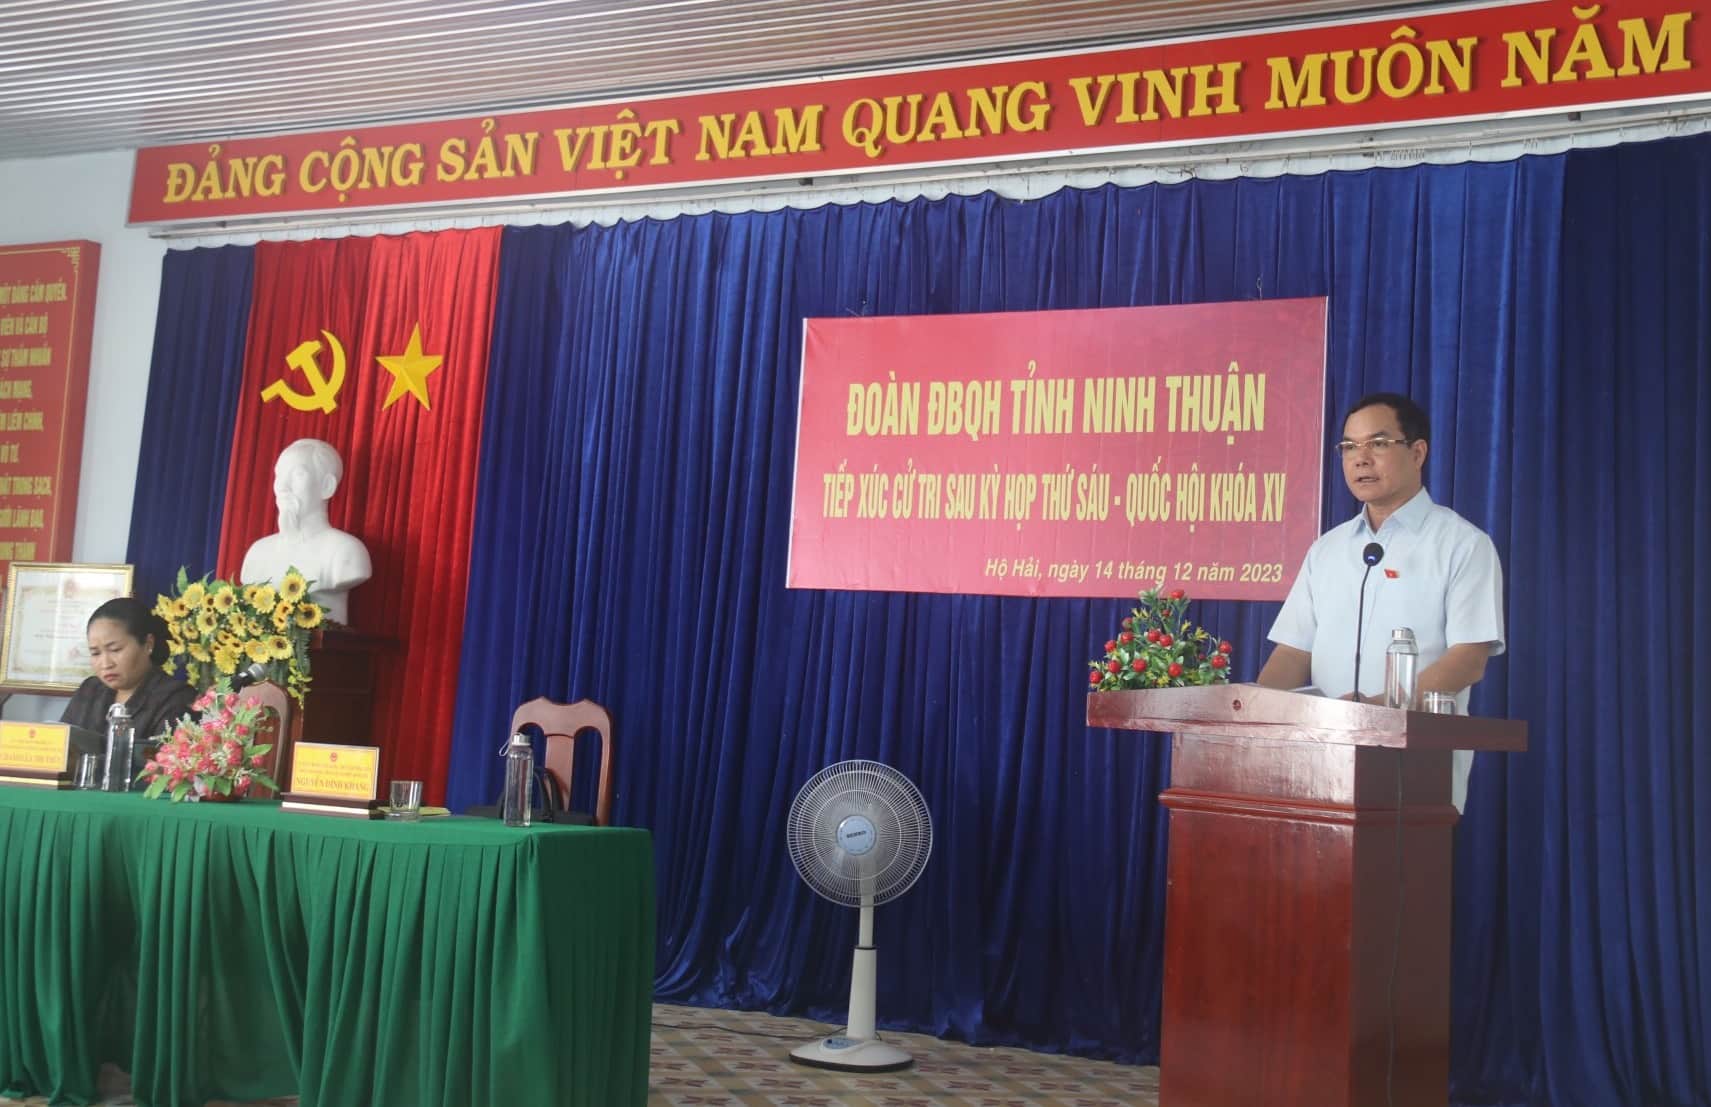 Ông Nguyễn Đình Khang đã báo cáo tóm tắt kết quả kỳ họp thứ 6, Quốc hội khóa XV. Ảnh: Hữu Long